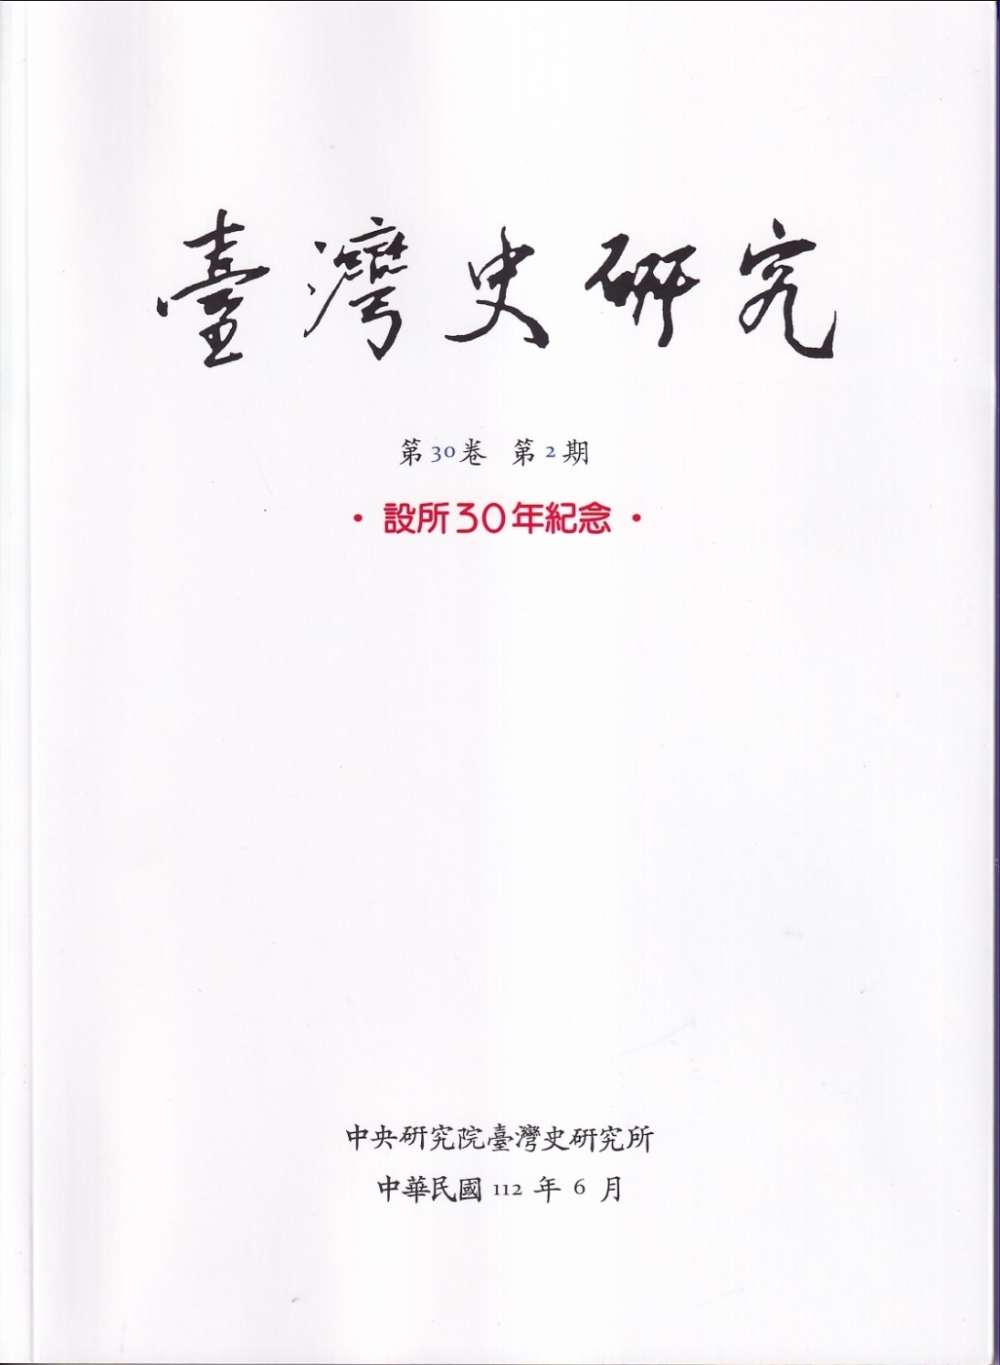 臺灣史研究第30卷2期(112.06)：設所30年紀念